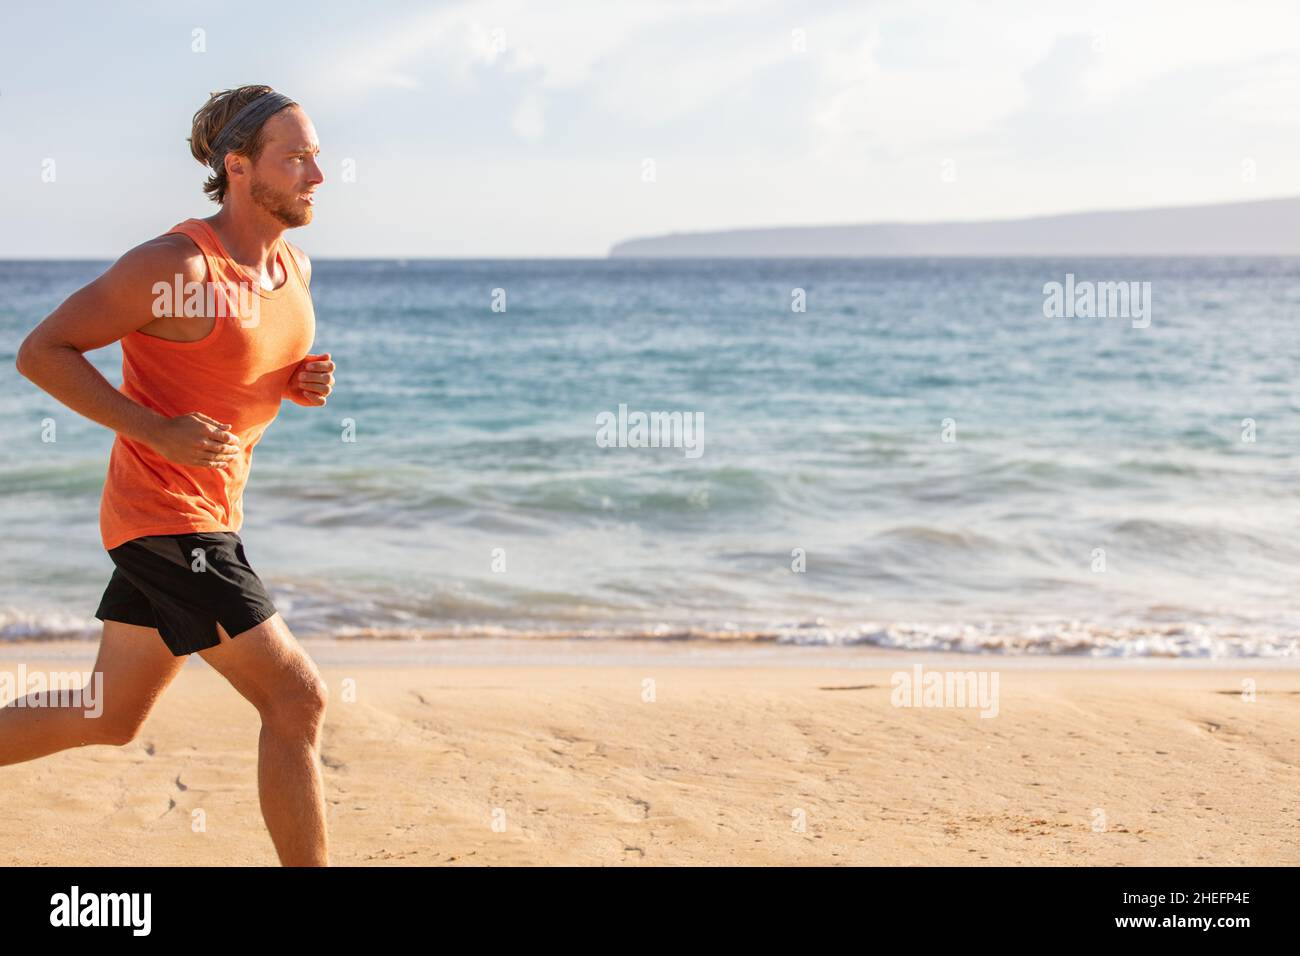 Laufsport Mann Profil des Athleten Training am Strand mit Landschaft Kopie Platz. Blick auf den Sonnenuntergang im Sommer Ozean. Bewegung aktiven Lebensstil Stockfoto